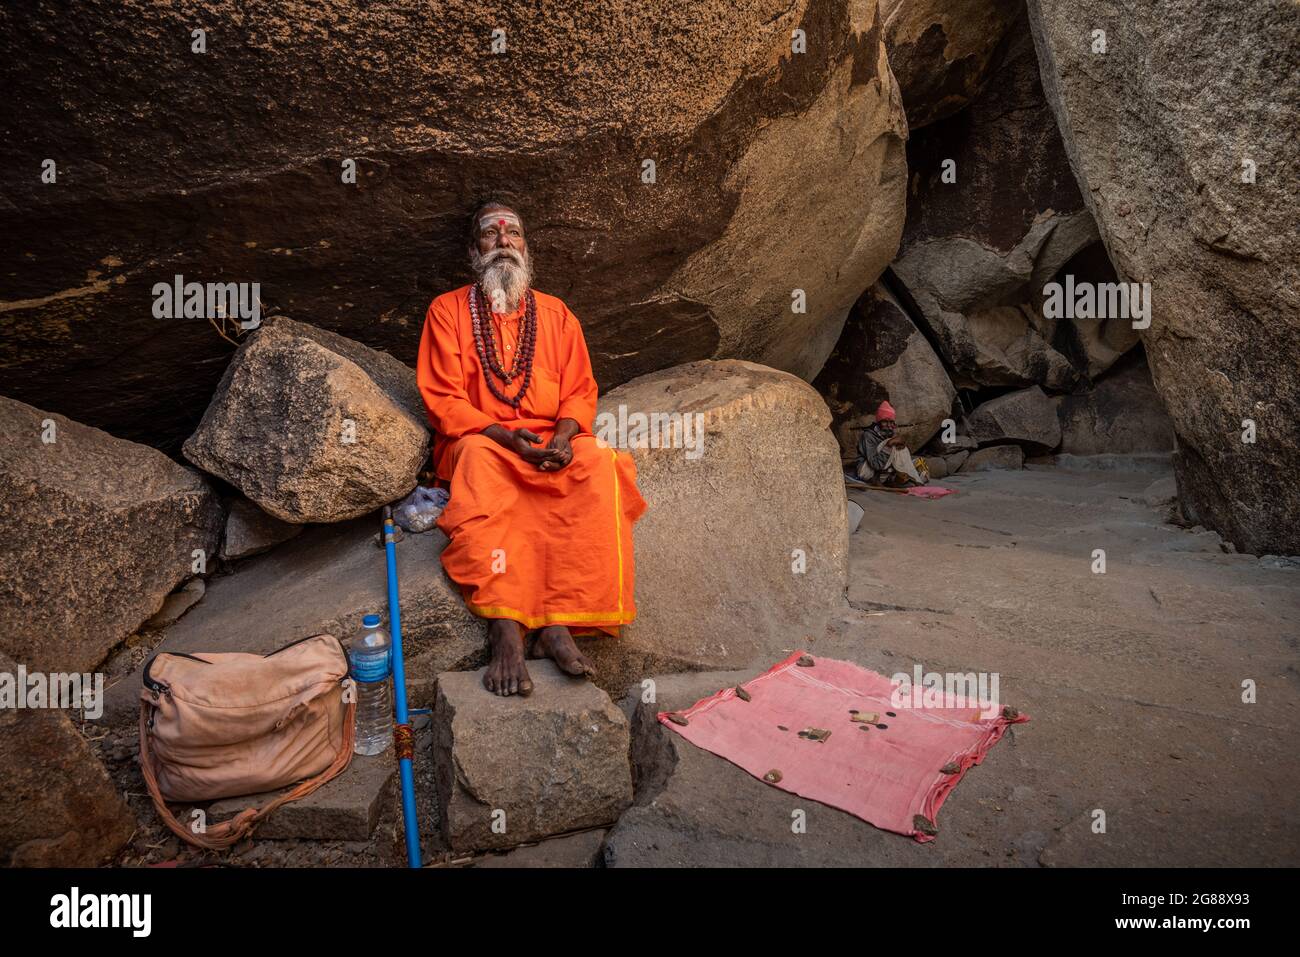 Hampi, Karnataka, India - 11 de enero de 2020 : Un monje vestido de naranja, sentado entre las piedras del Camino de Kampa Bhupa en Hampi. Foto de stock